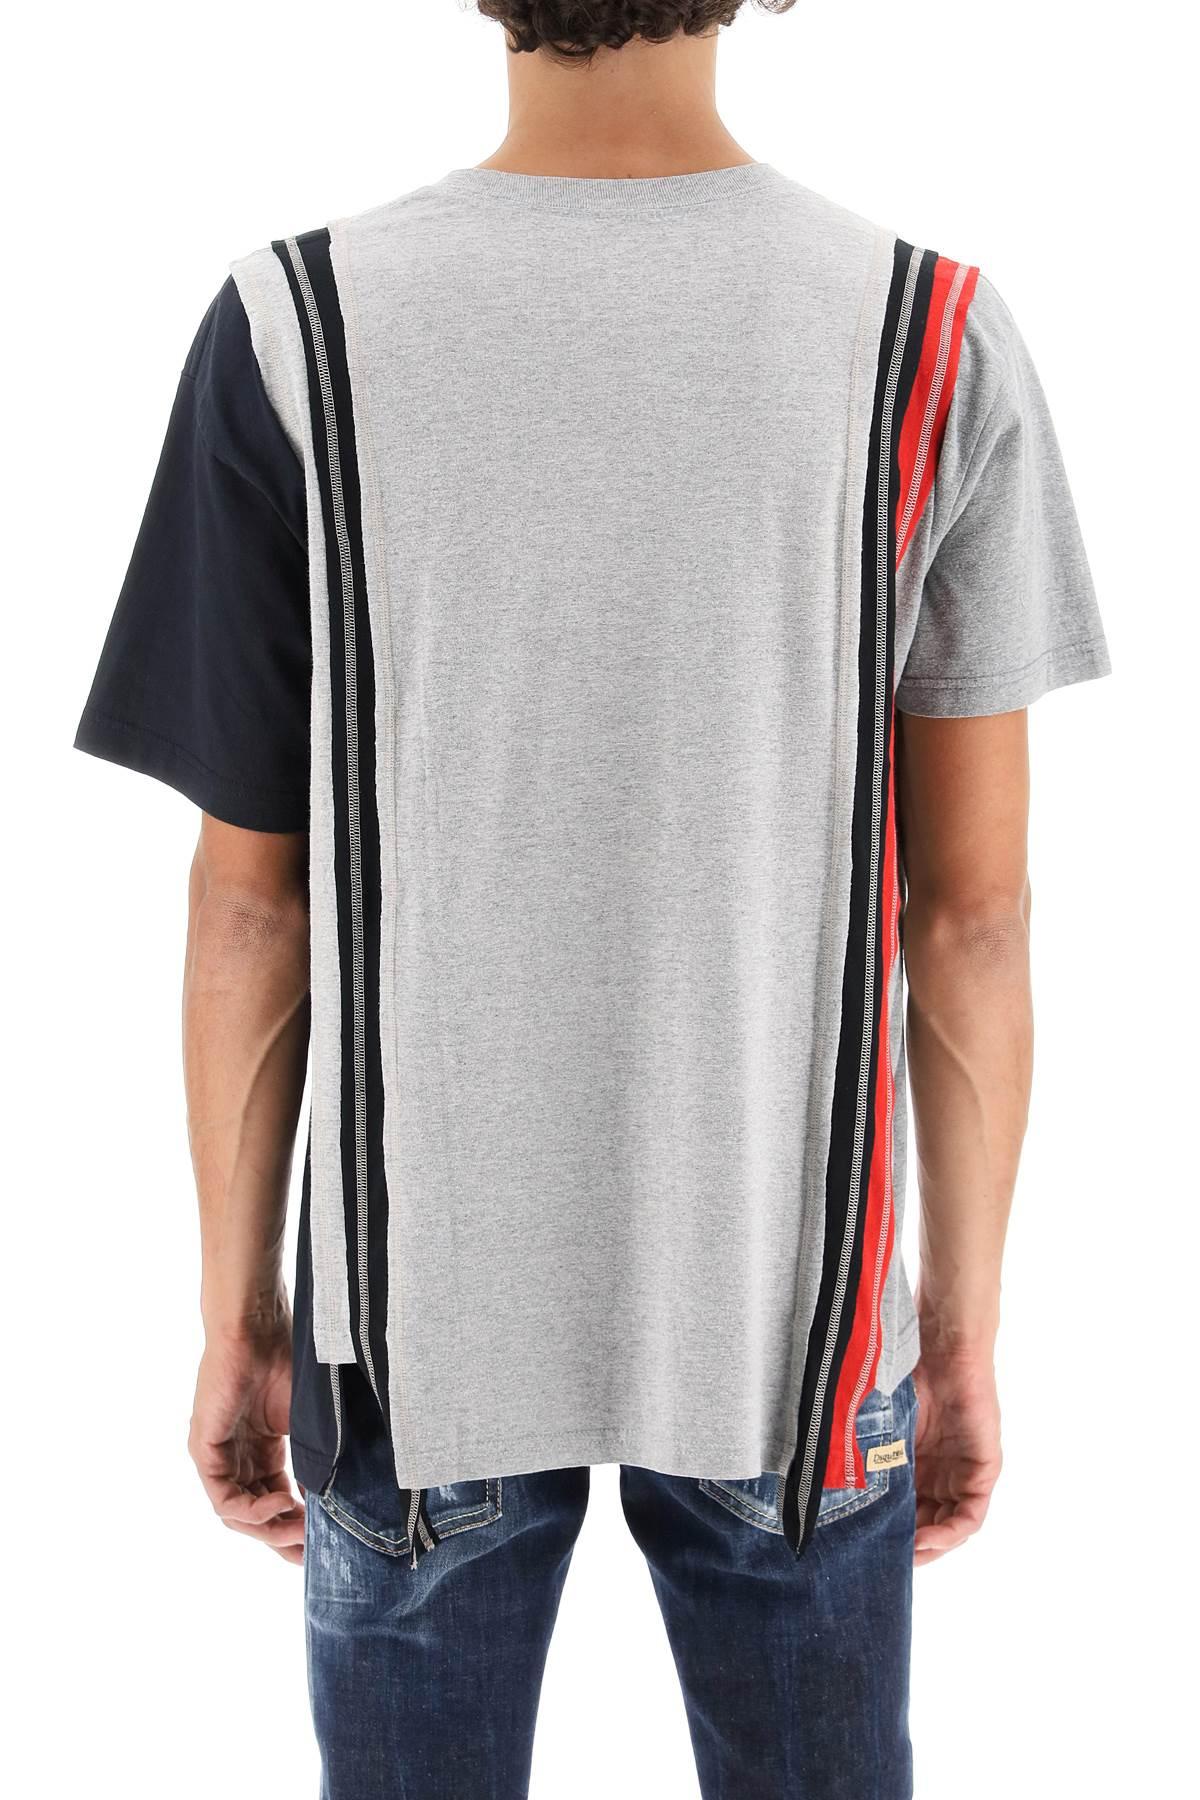 Needles 'rebuild' 7cuts T-shirt for Men | Lyst